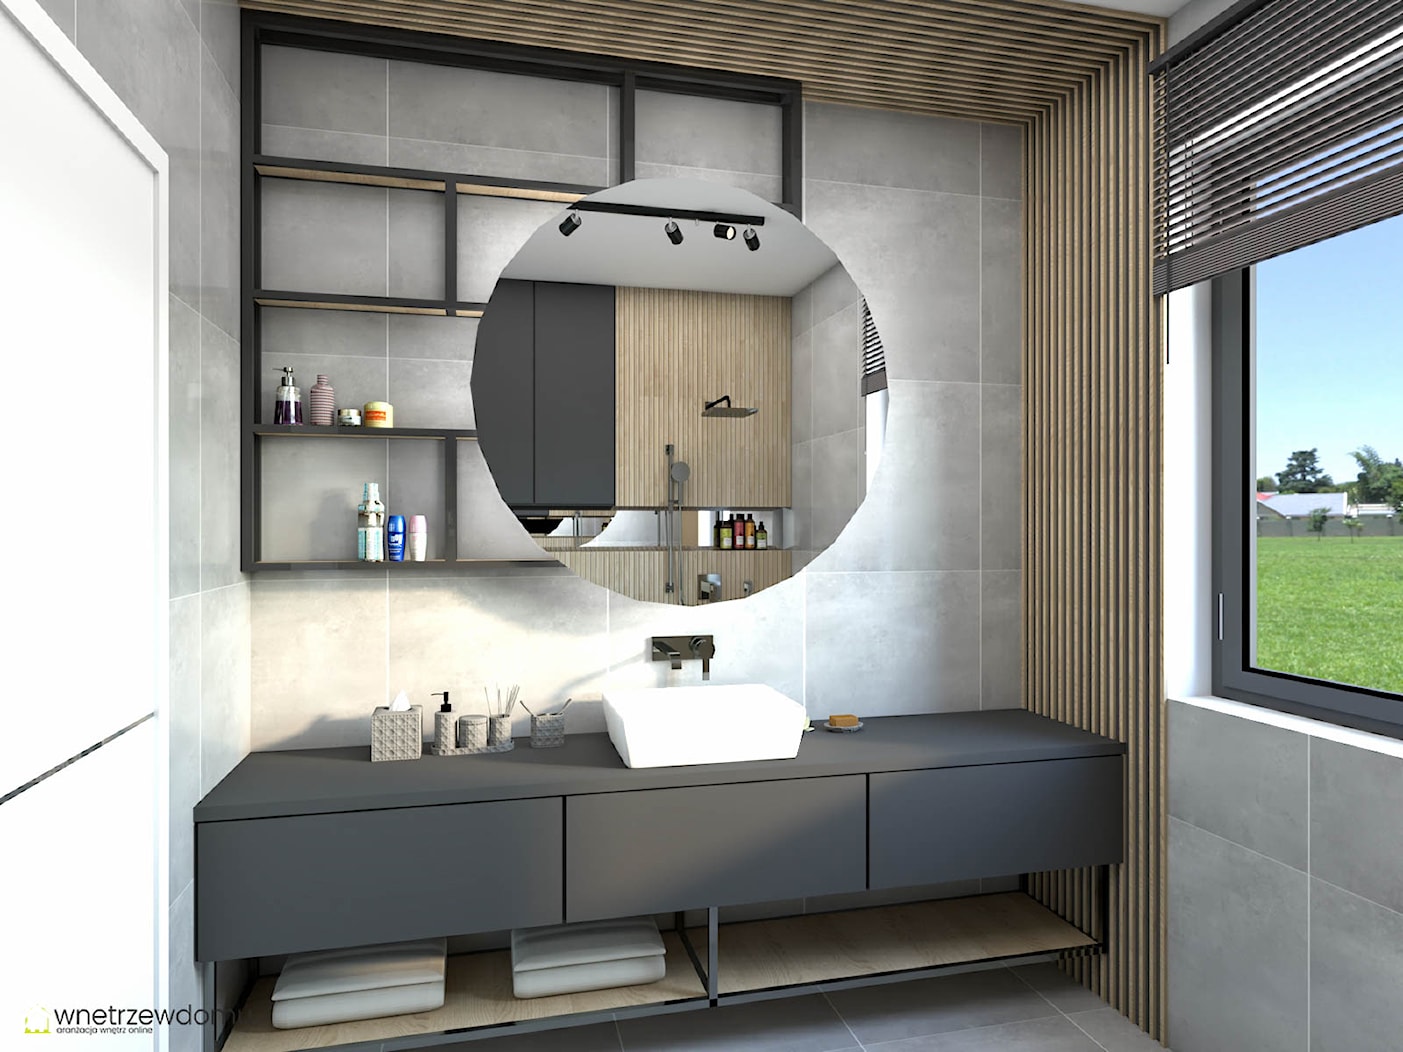 Grafitowa łazienka z kabiną prysznicową - zdjęcie od wnetrzewdomu - Homebook